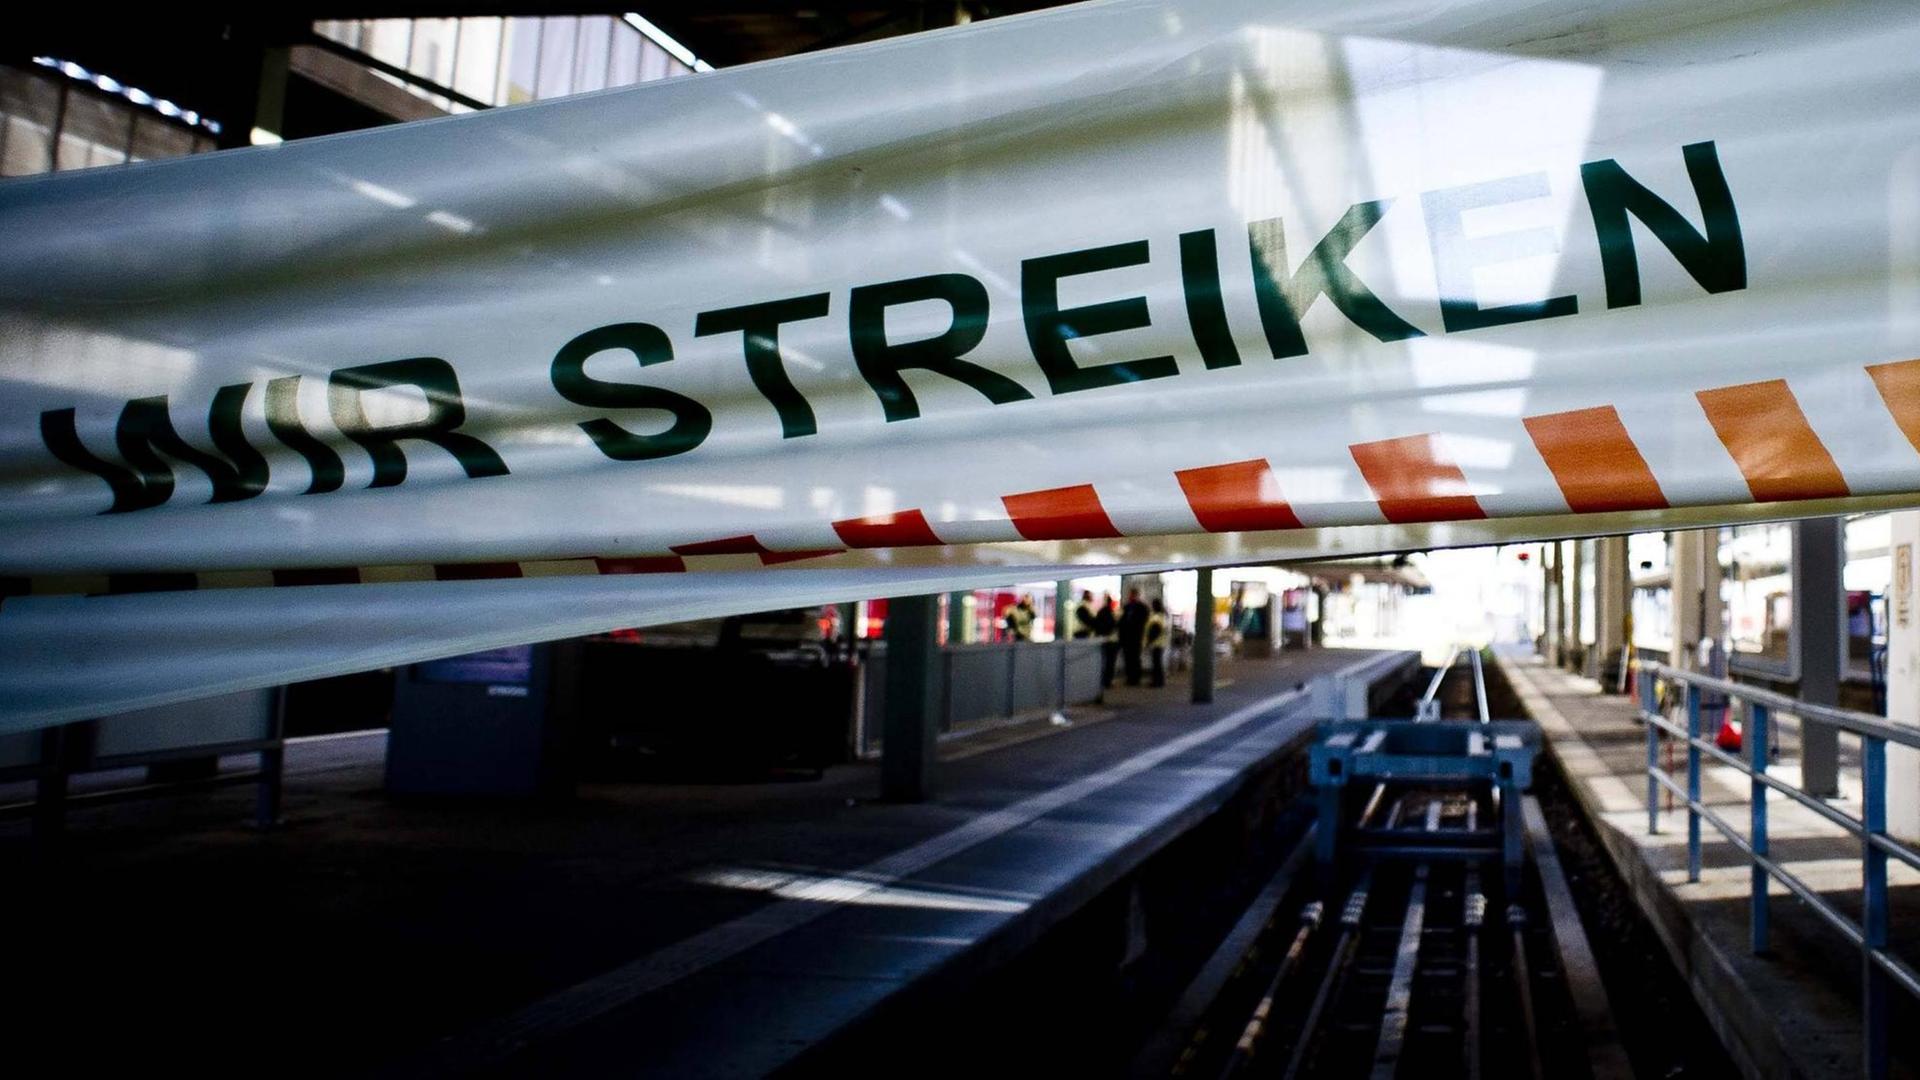 Die Bahn tritt in einen fast einwöchigen Streik - hier ein Bild vom Stuttgarter Hauptbahnhof.